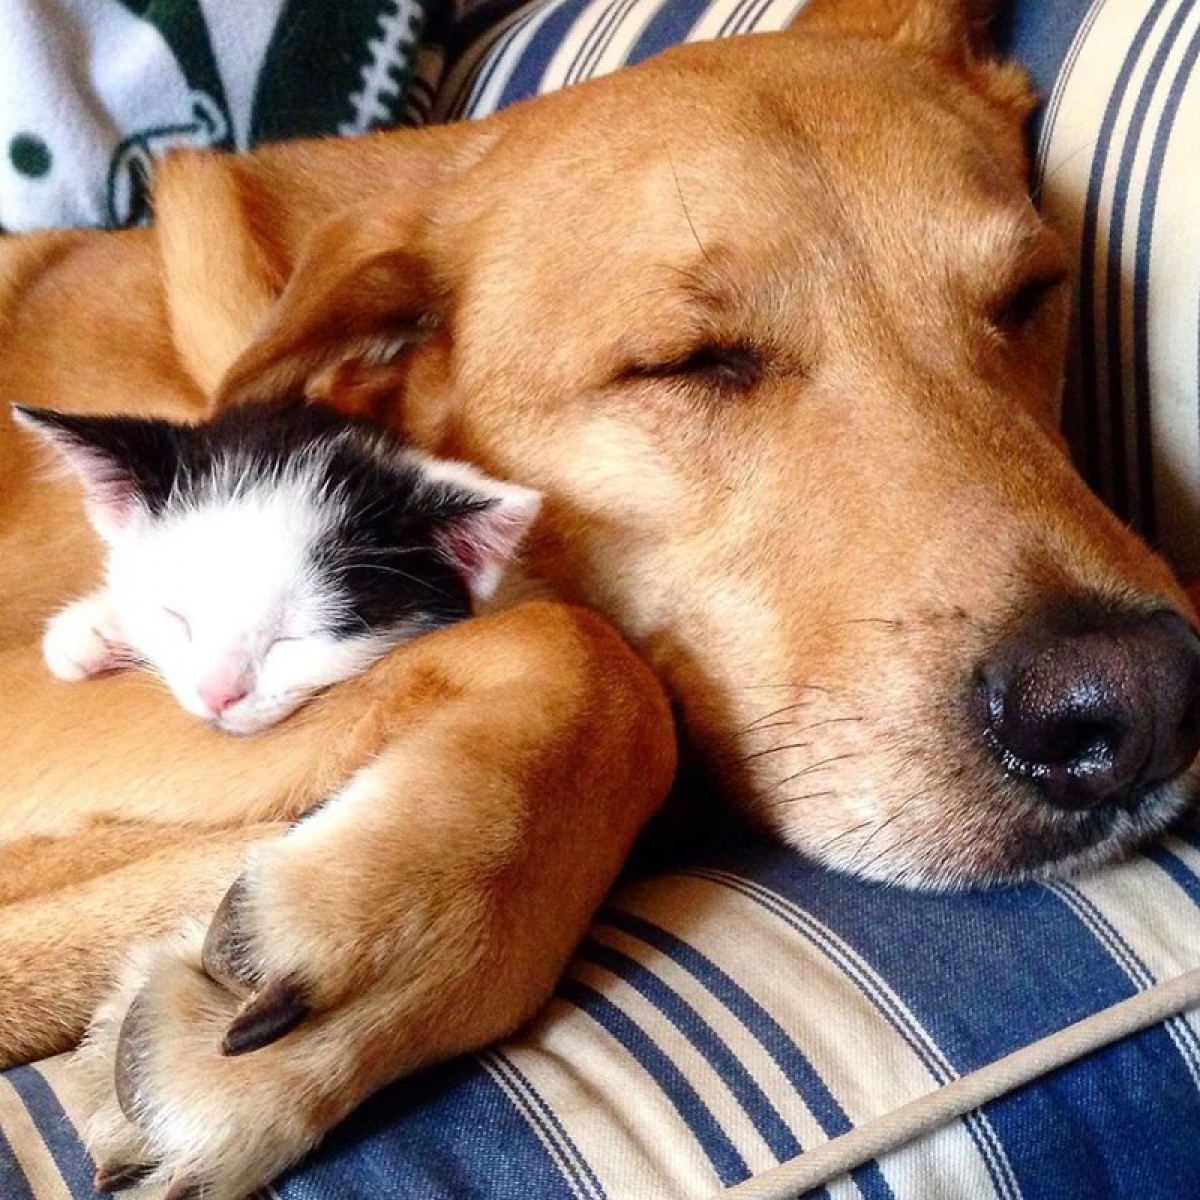 Điềm lành chó mèo là một chủ đề phong thủy phổ biến. Hãy cùng xem bức ảnh về chú chó và mèo và cảm nhận tình bạn và yêu thương trong nét đẹp của chúng. Bức ảnh sẽ mang lại cho bạn một cảm giác yên bình và hòa thuận.